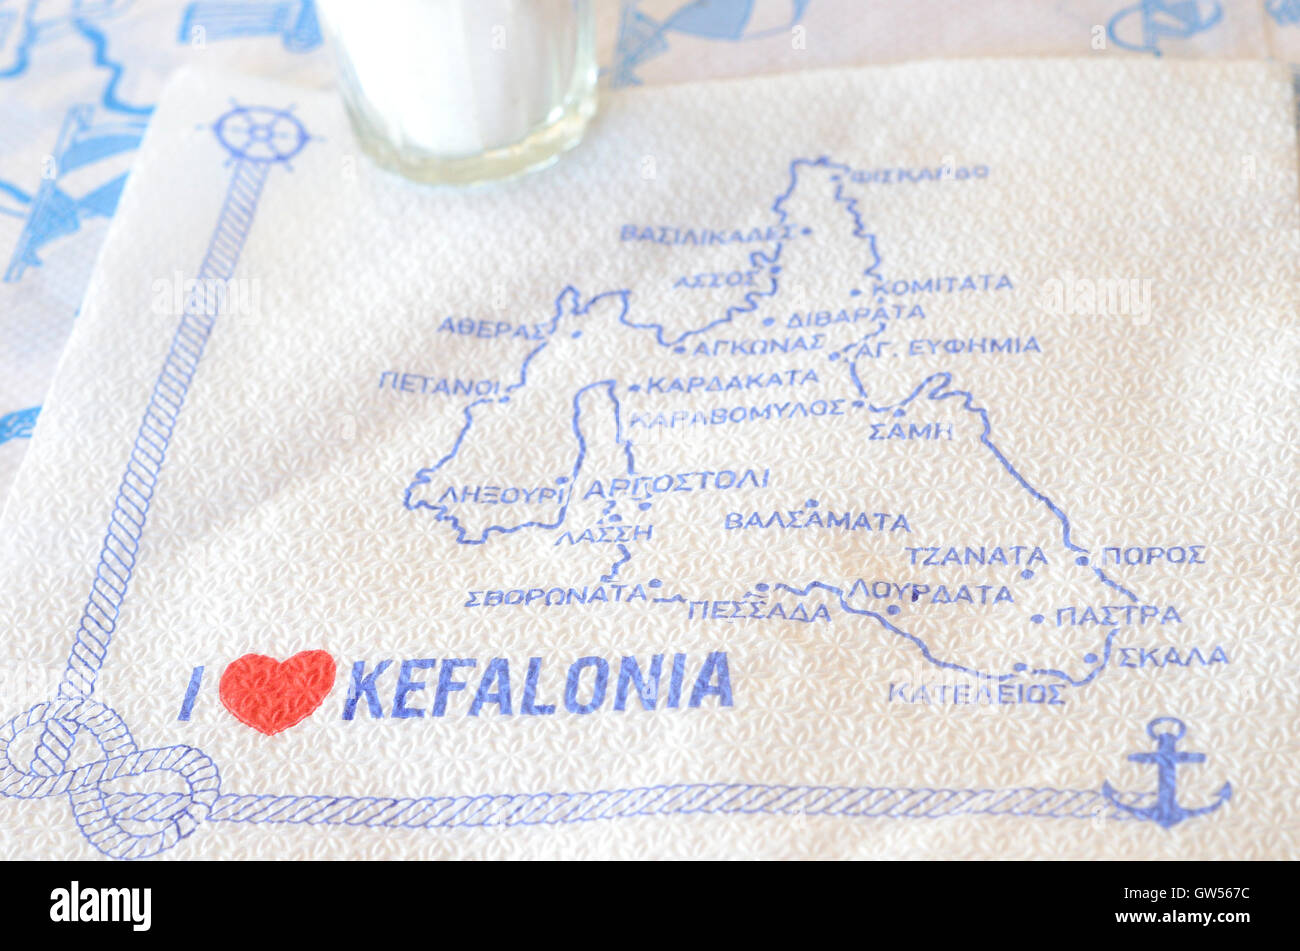 Kefalonia map napkin abstract Stock Photo